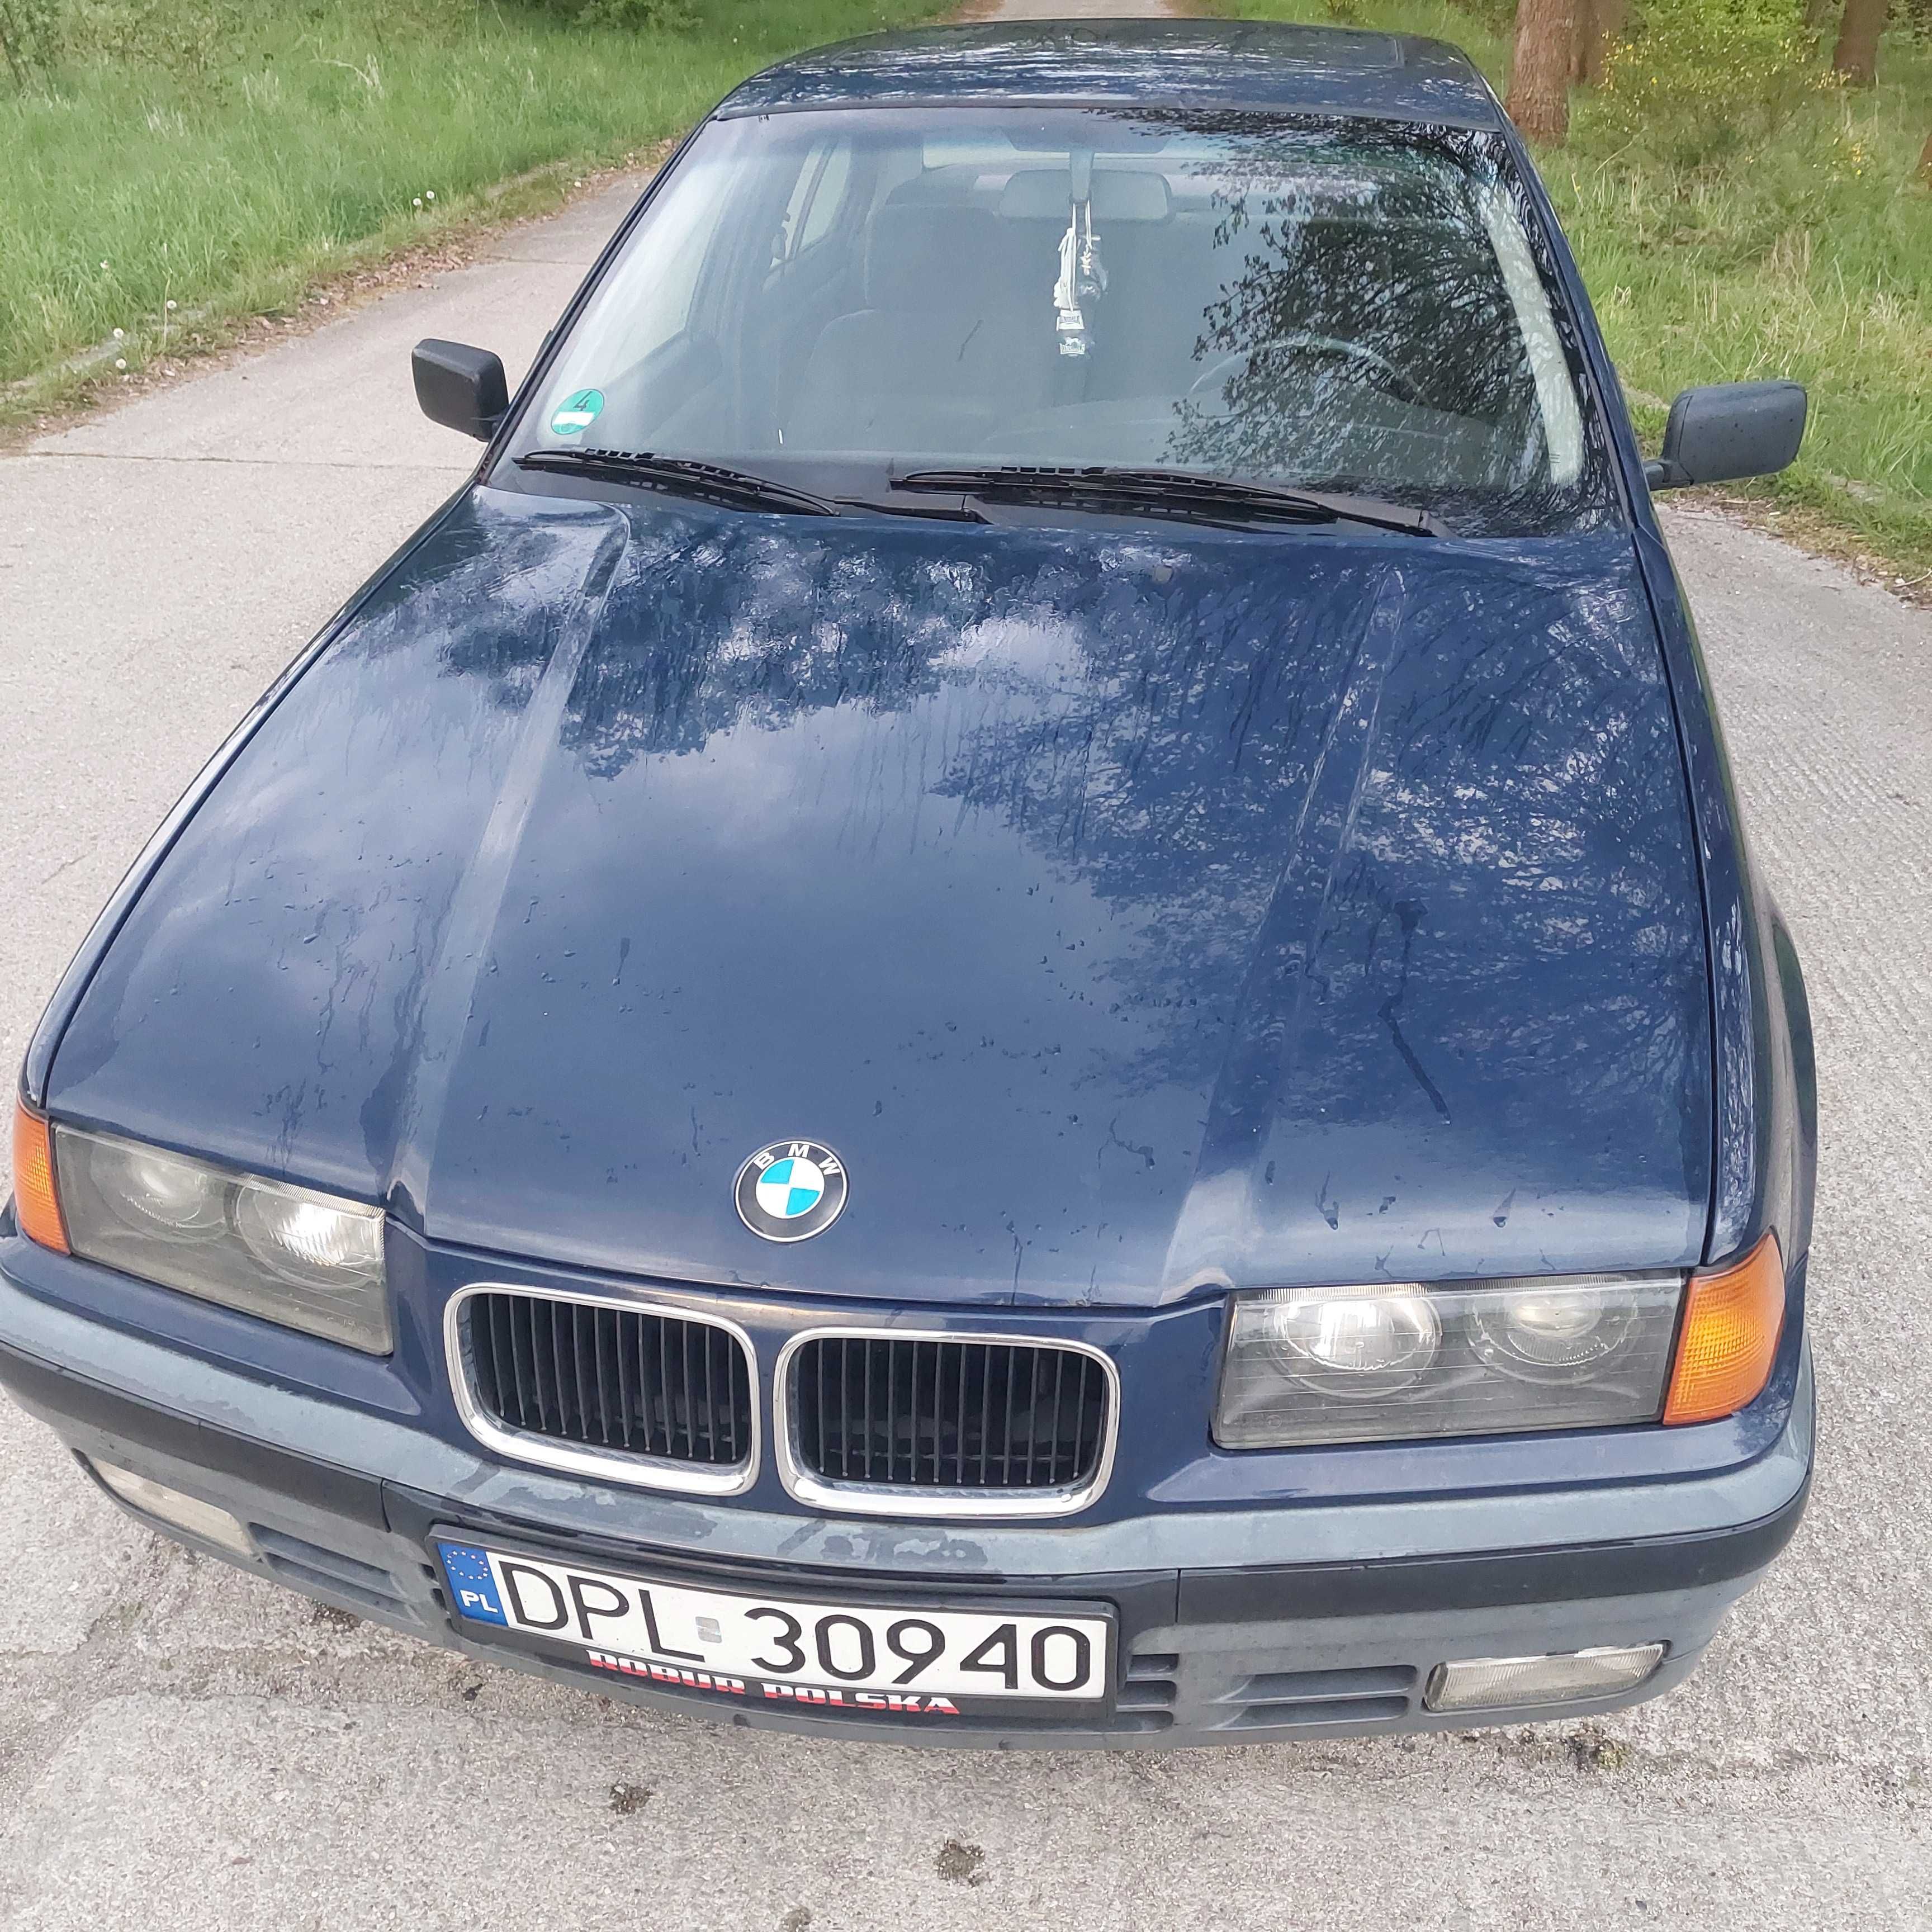 BMW 318i e 36 w bardzo dobrym stanie